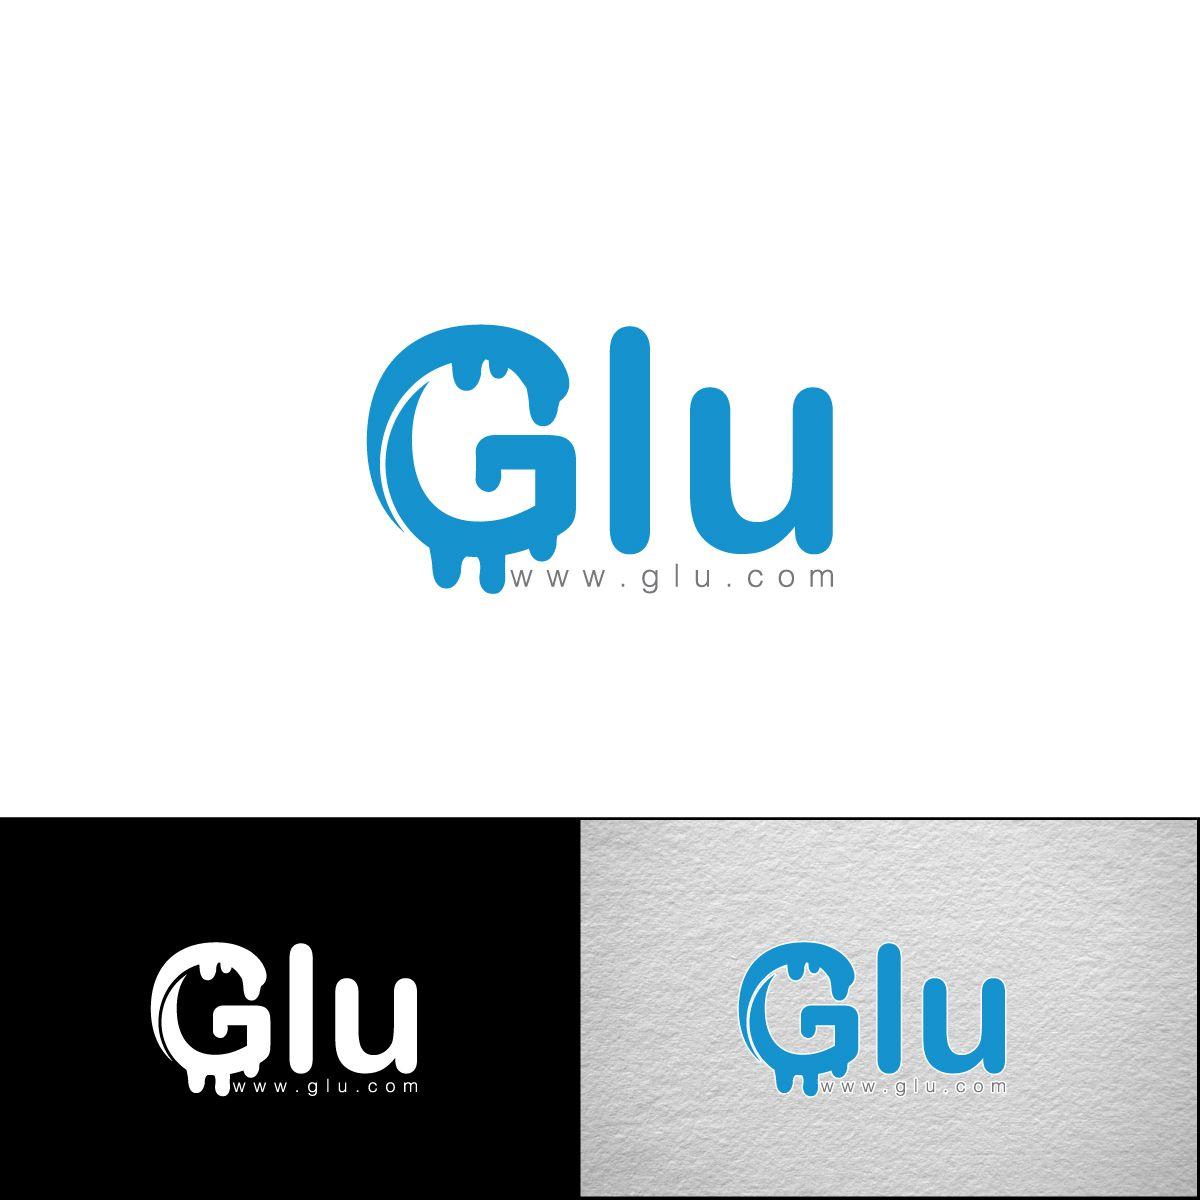 Glu Logo - Professional, Bold, Media Logo Design for Glu by e-graphics | Design ...